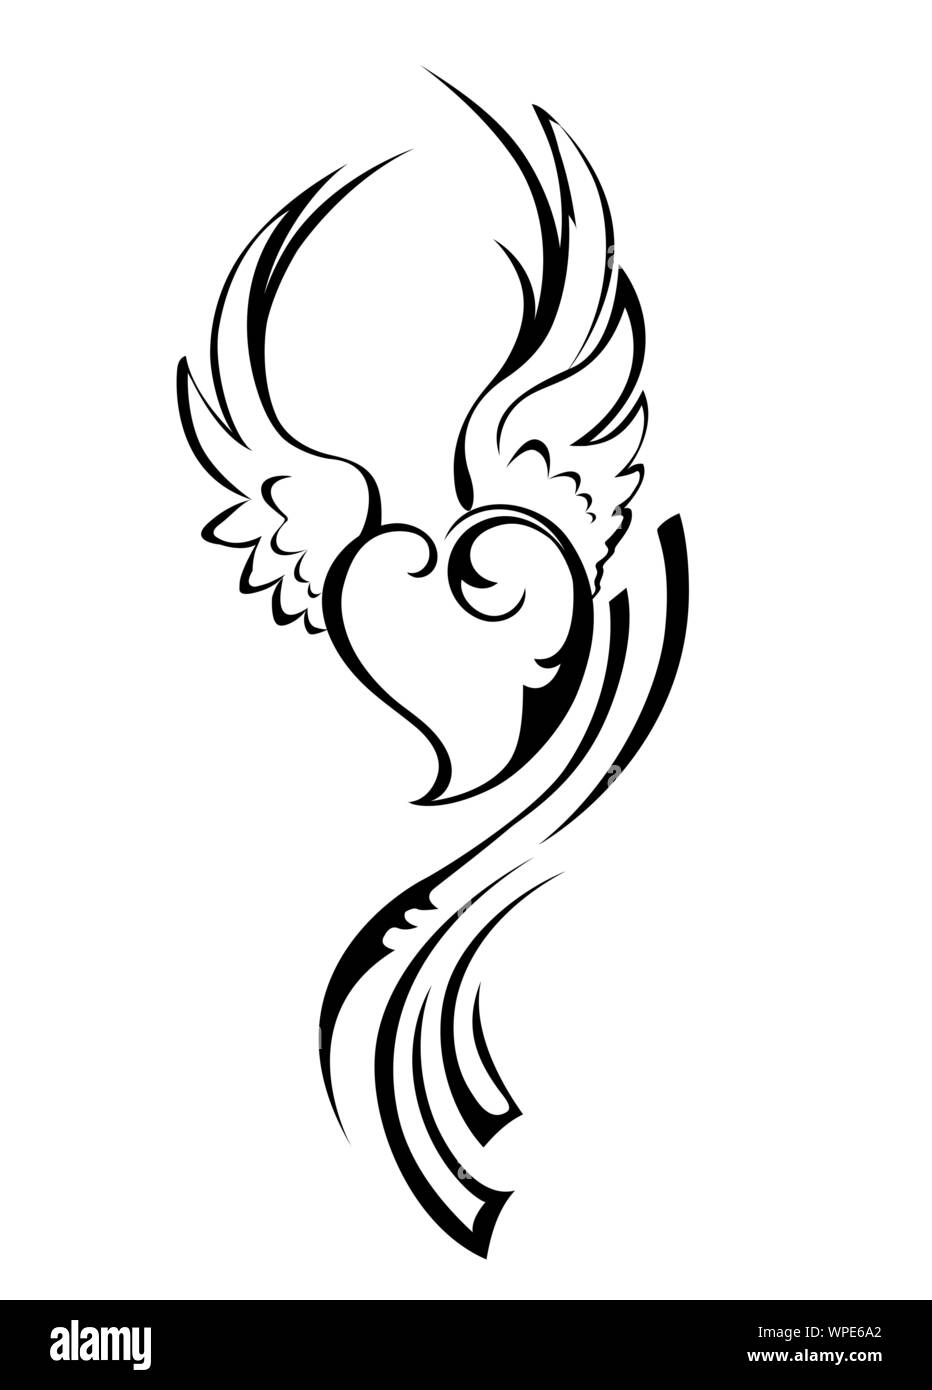 Kleine Engel Herz mit Flügeln durch schwarze Kontur im Tattoo Style auf weißem Hintergrund dargestellt. Stock Vektor